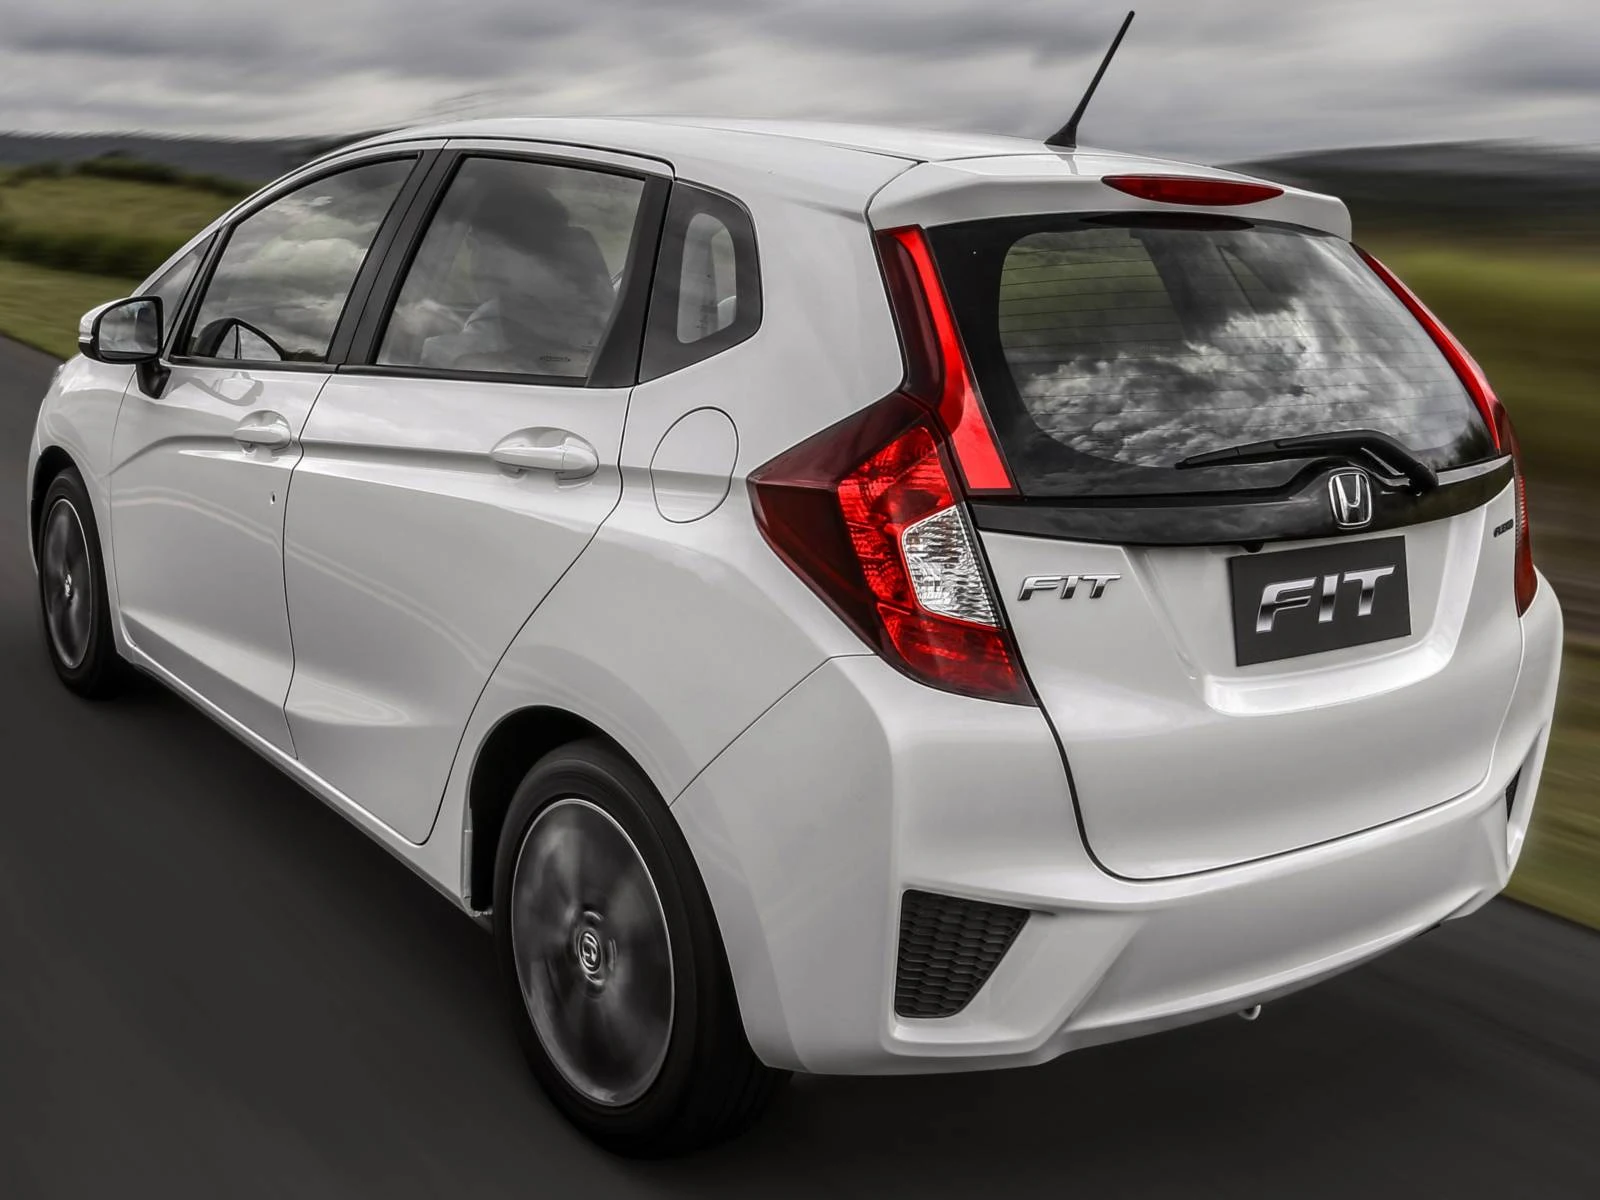 Novo Honda Fit 2015 - Branco